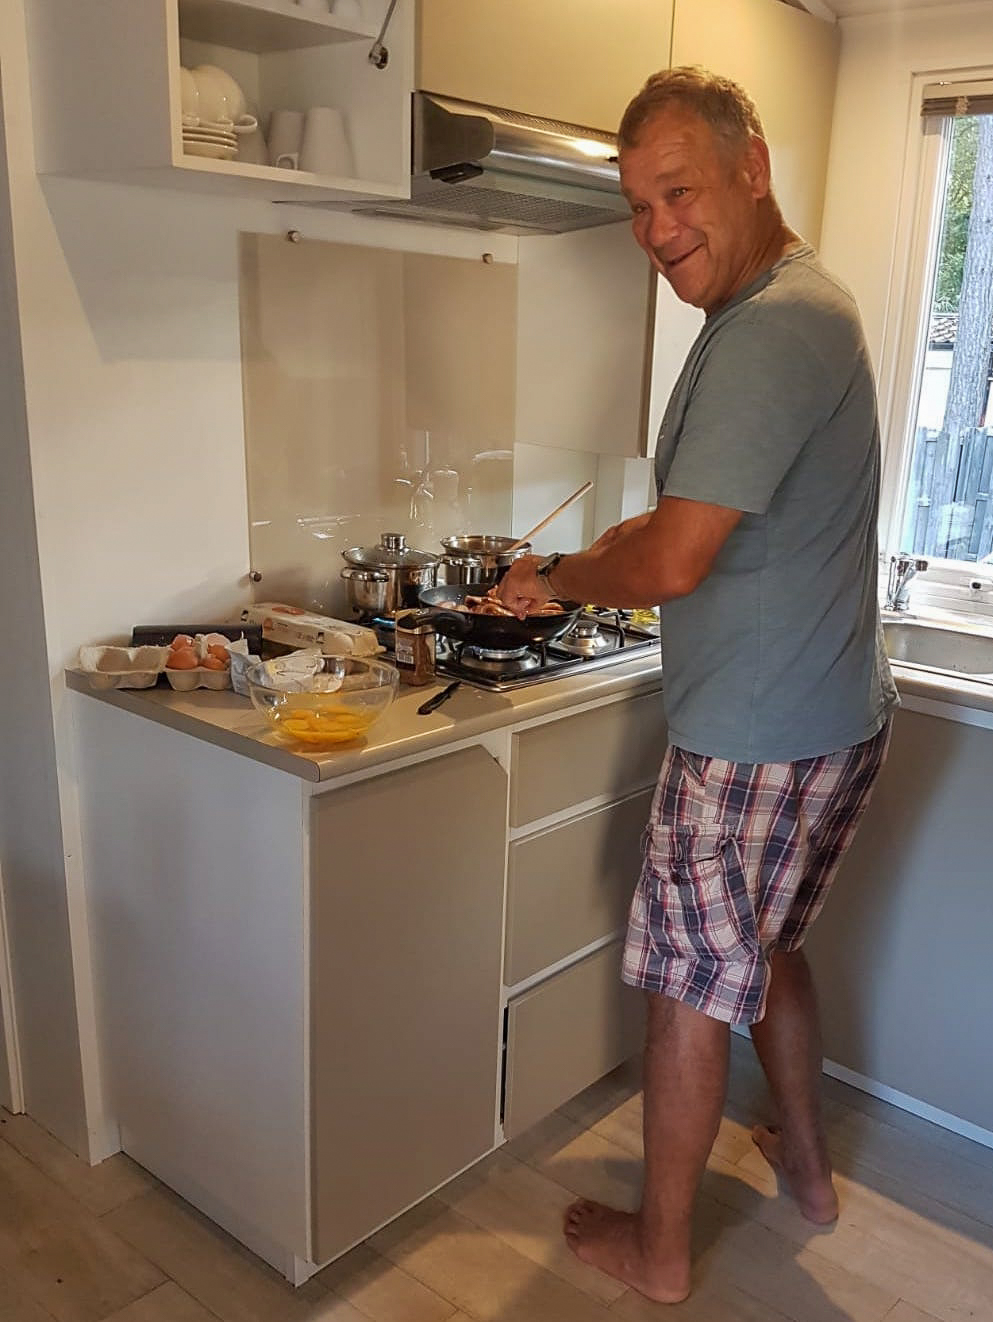 Roger prepares breakfast